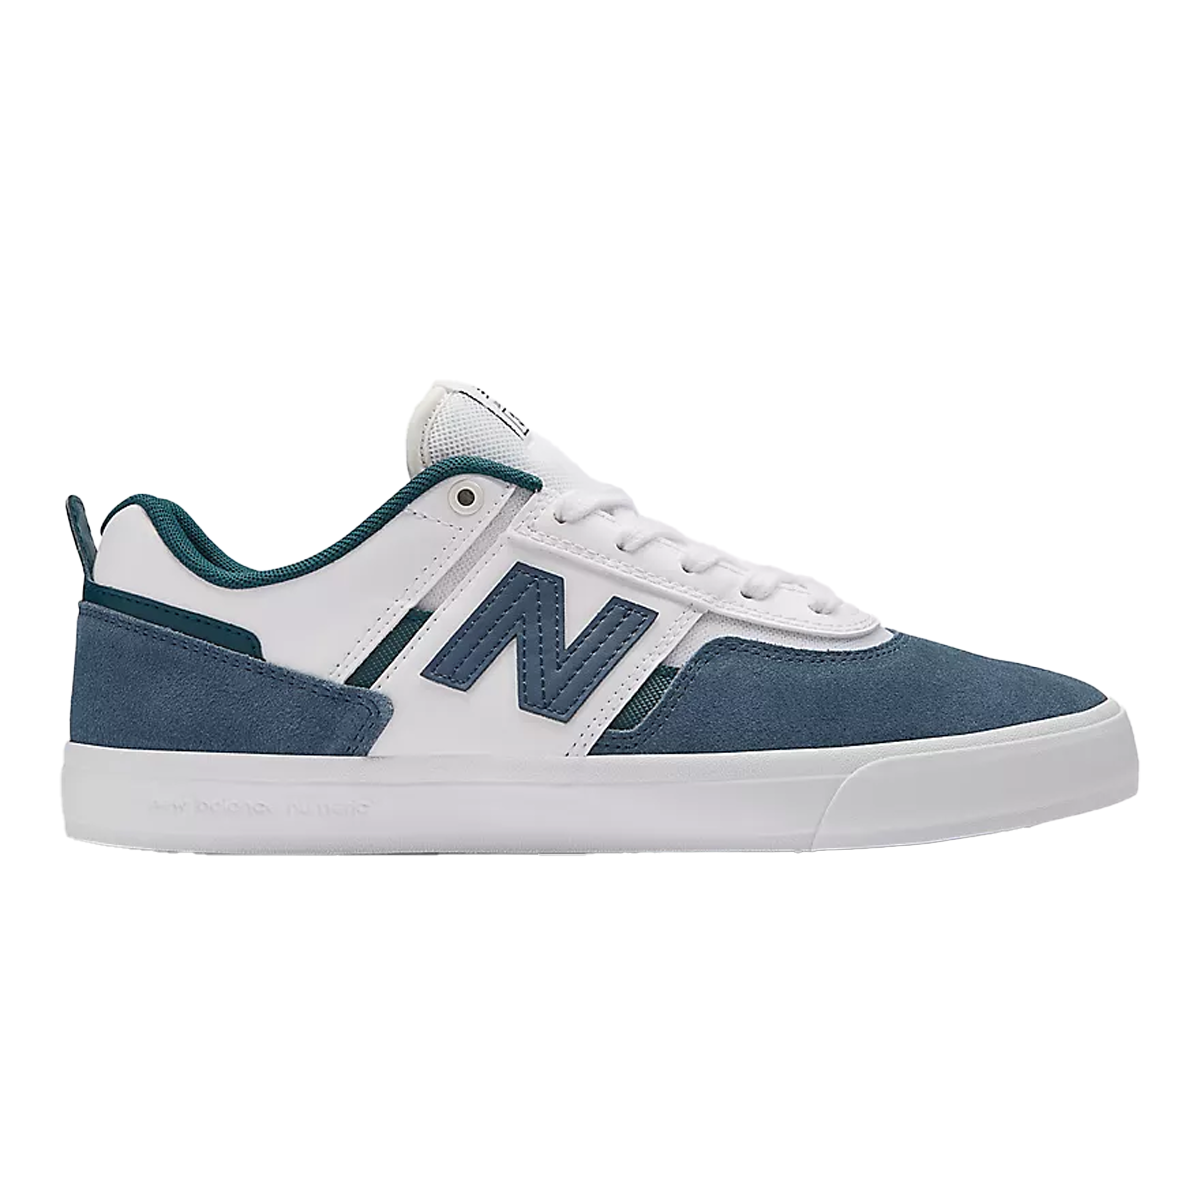 New Balance NM 306 Shoes - Vintage Indigo / White